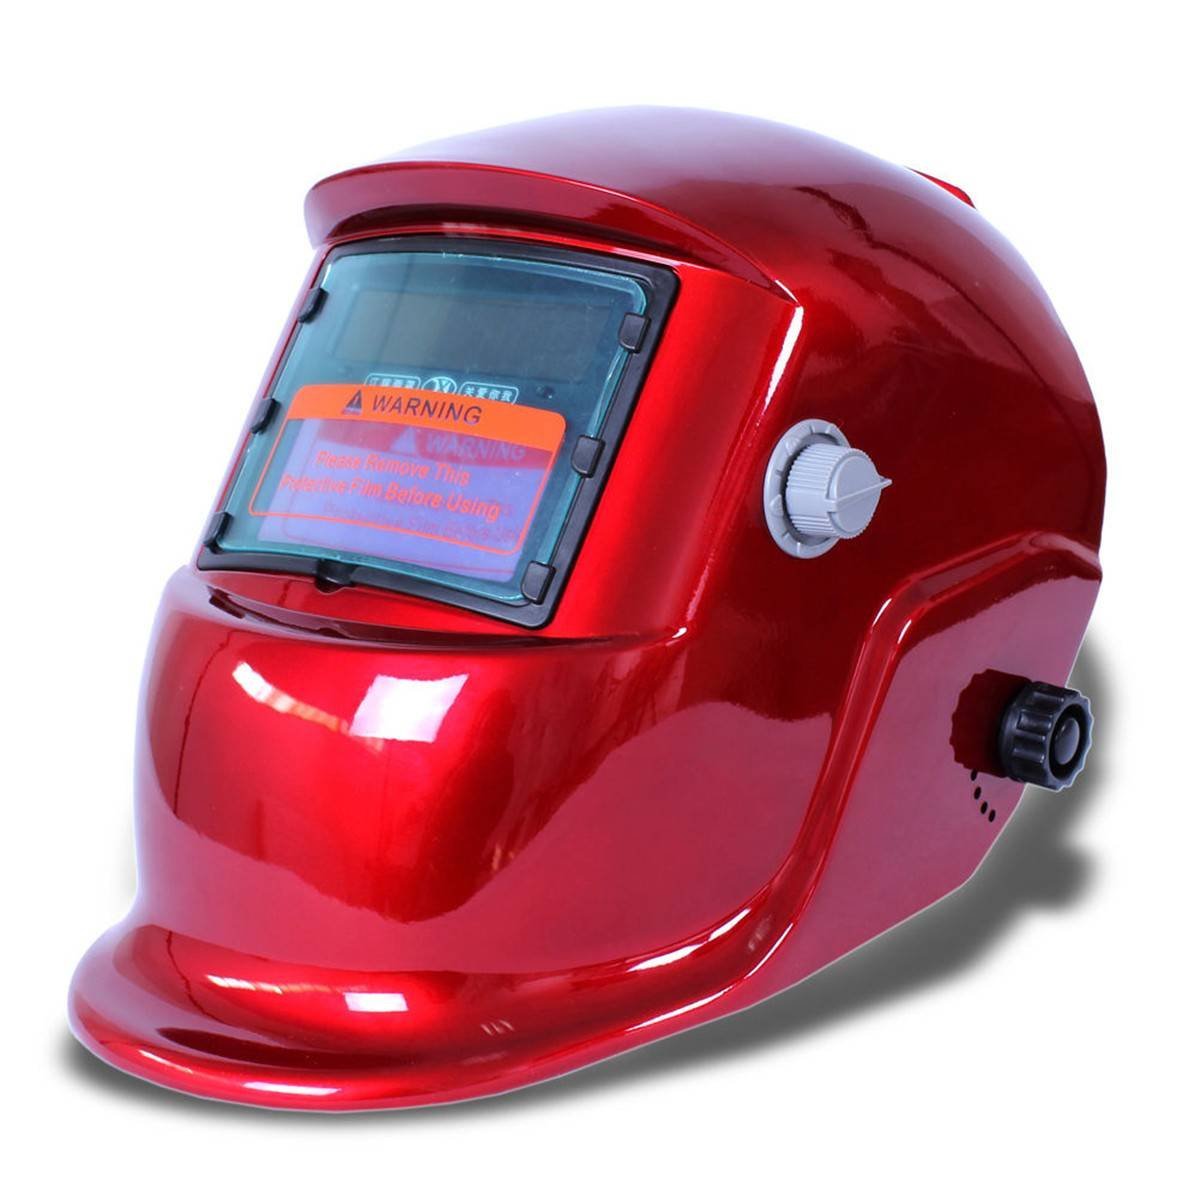 Lassen masker lashelm zonne-energie automatische (zonne-energie gebruik voor refill) Facial bescherming accessoires rood